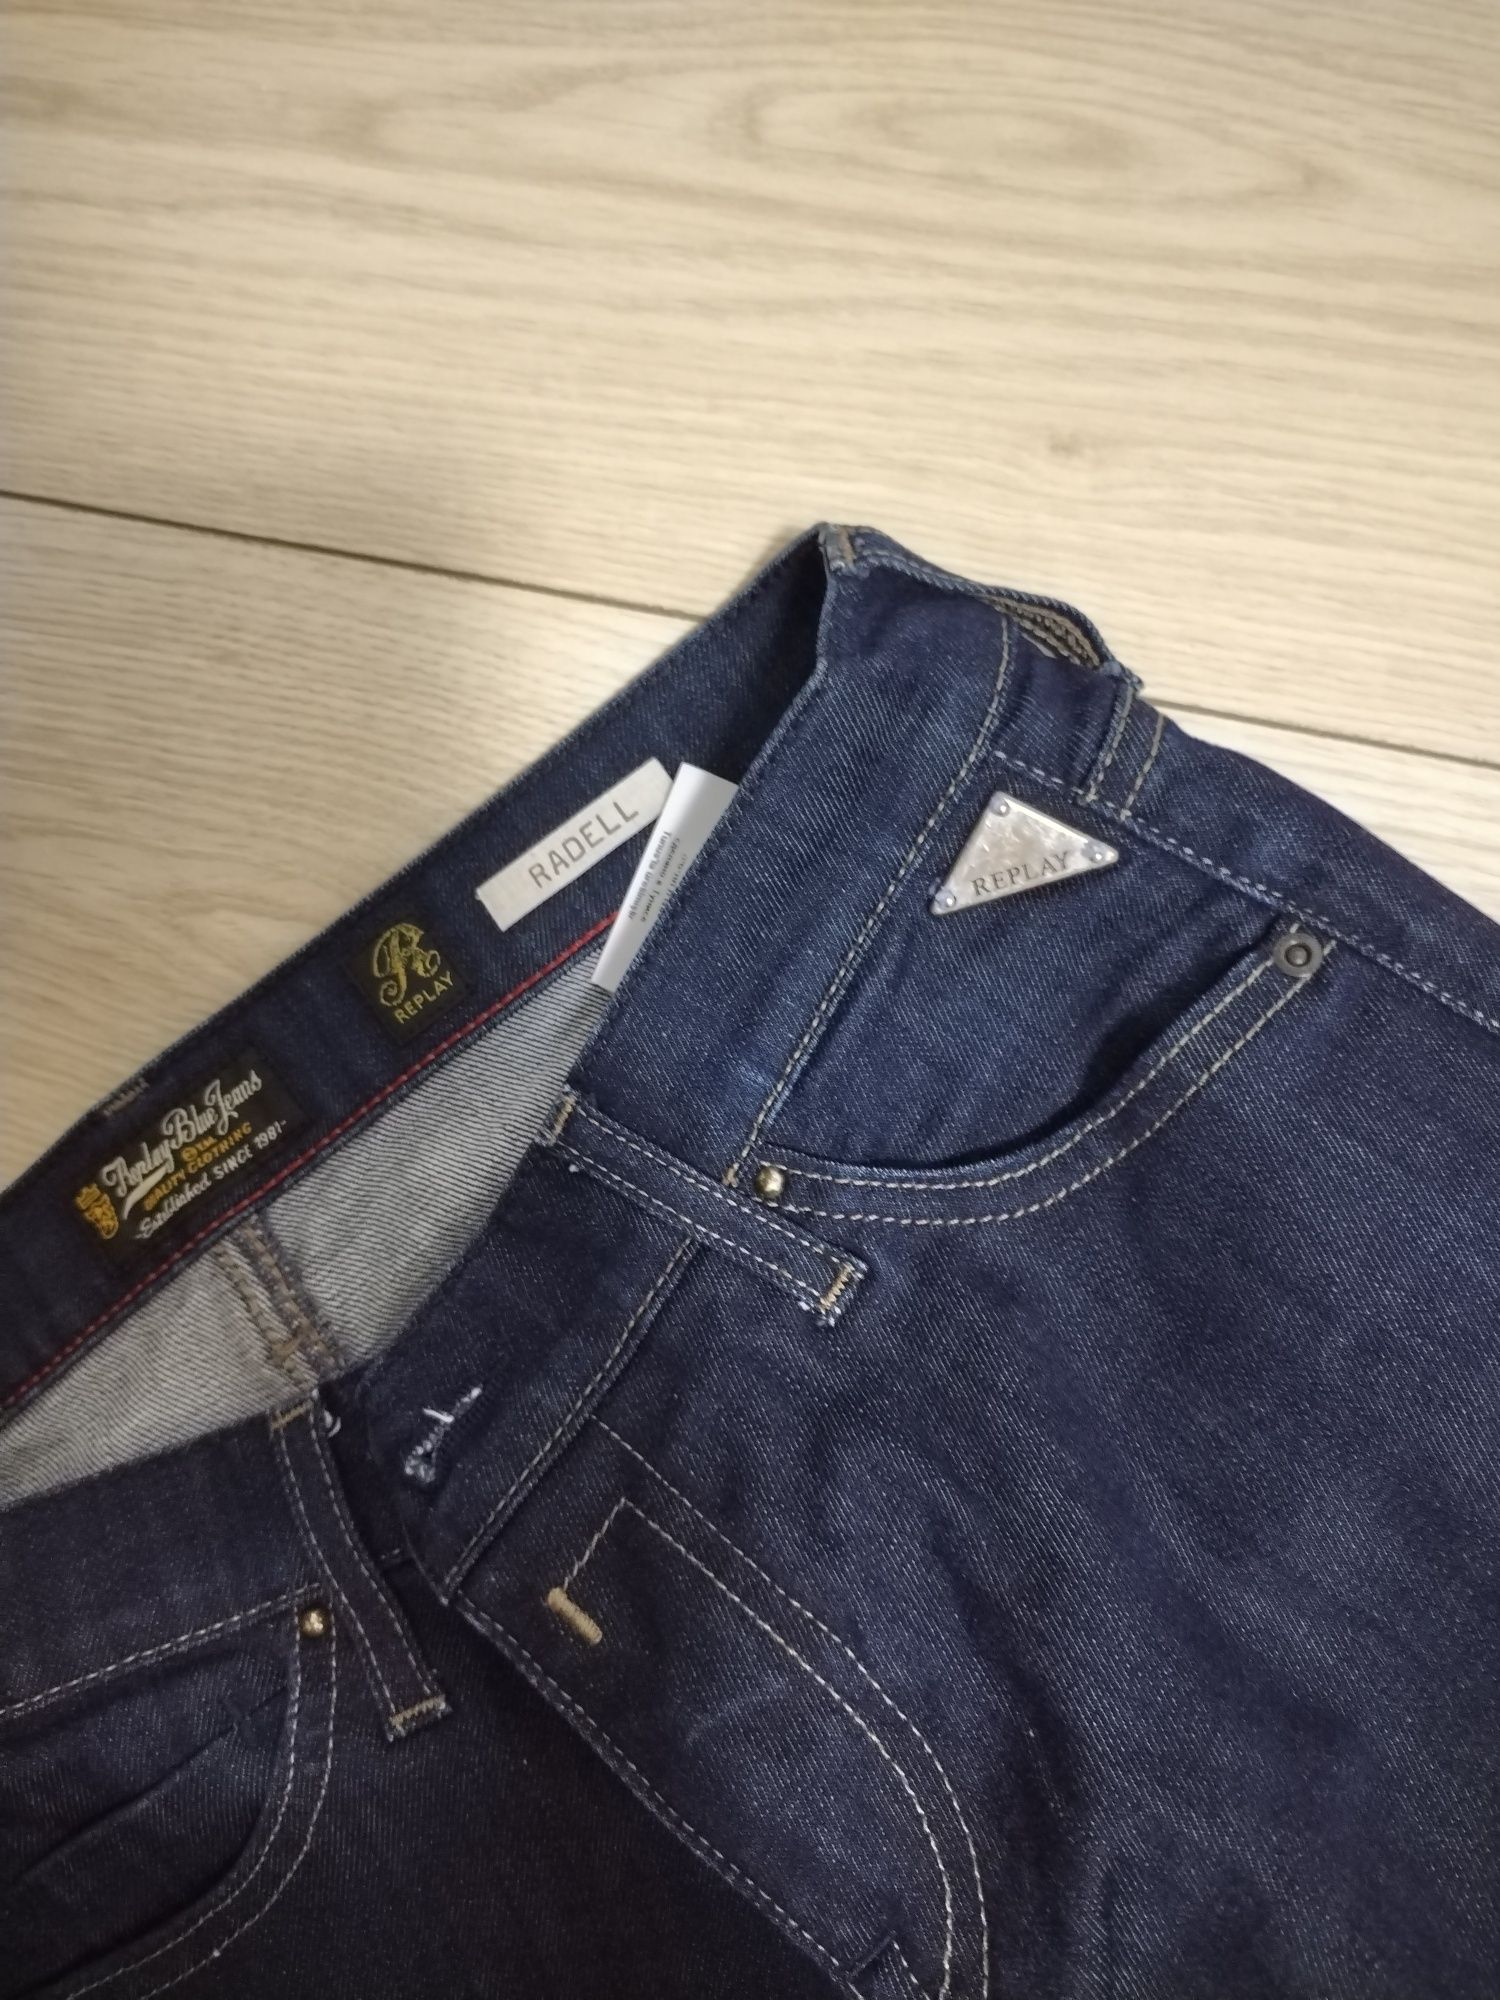 Jeans Replay, mărimea 36